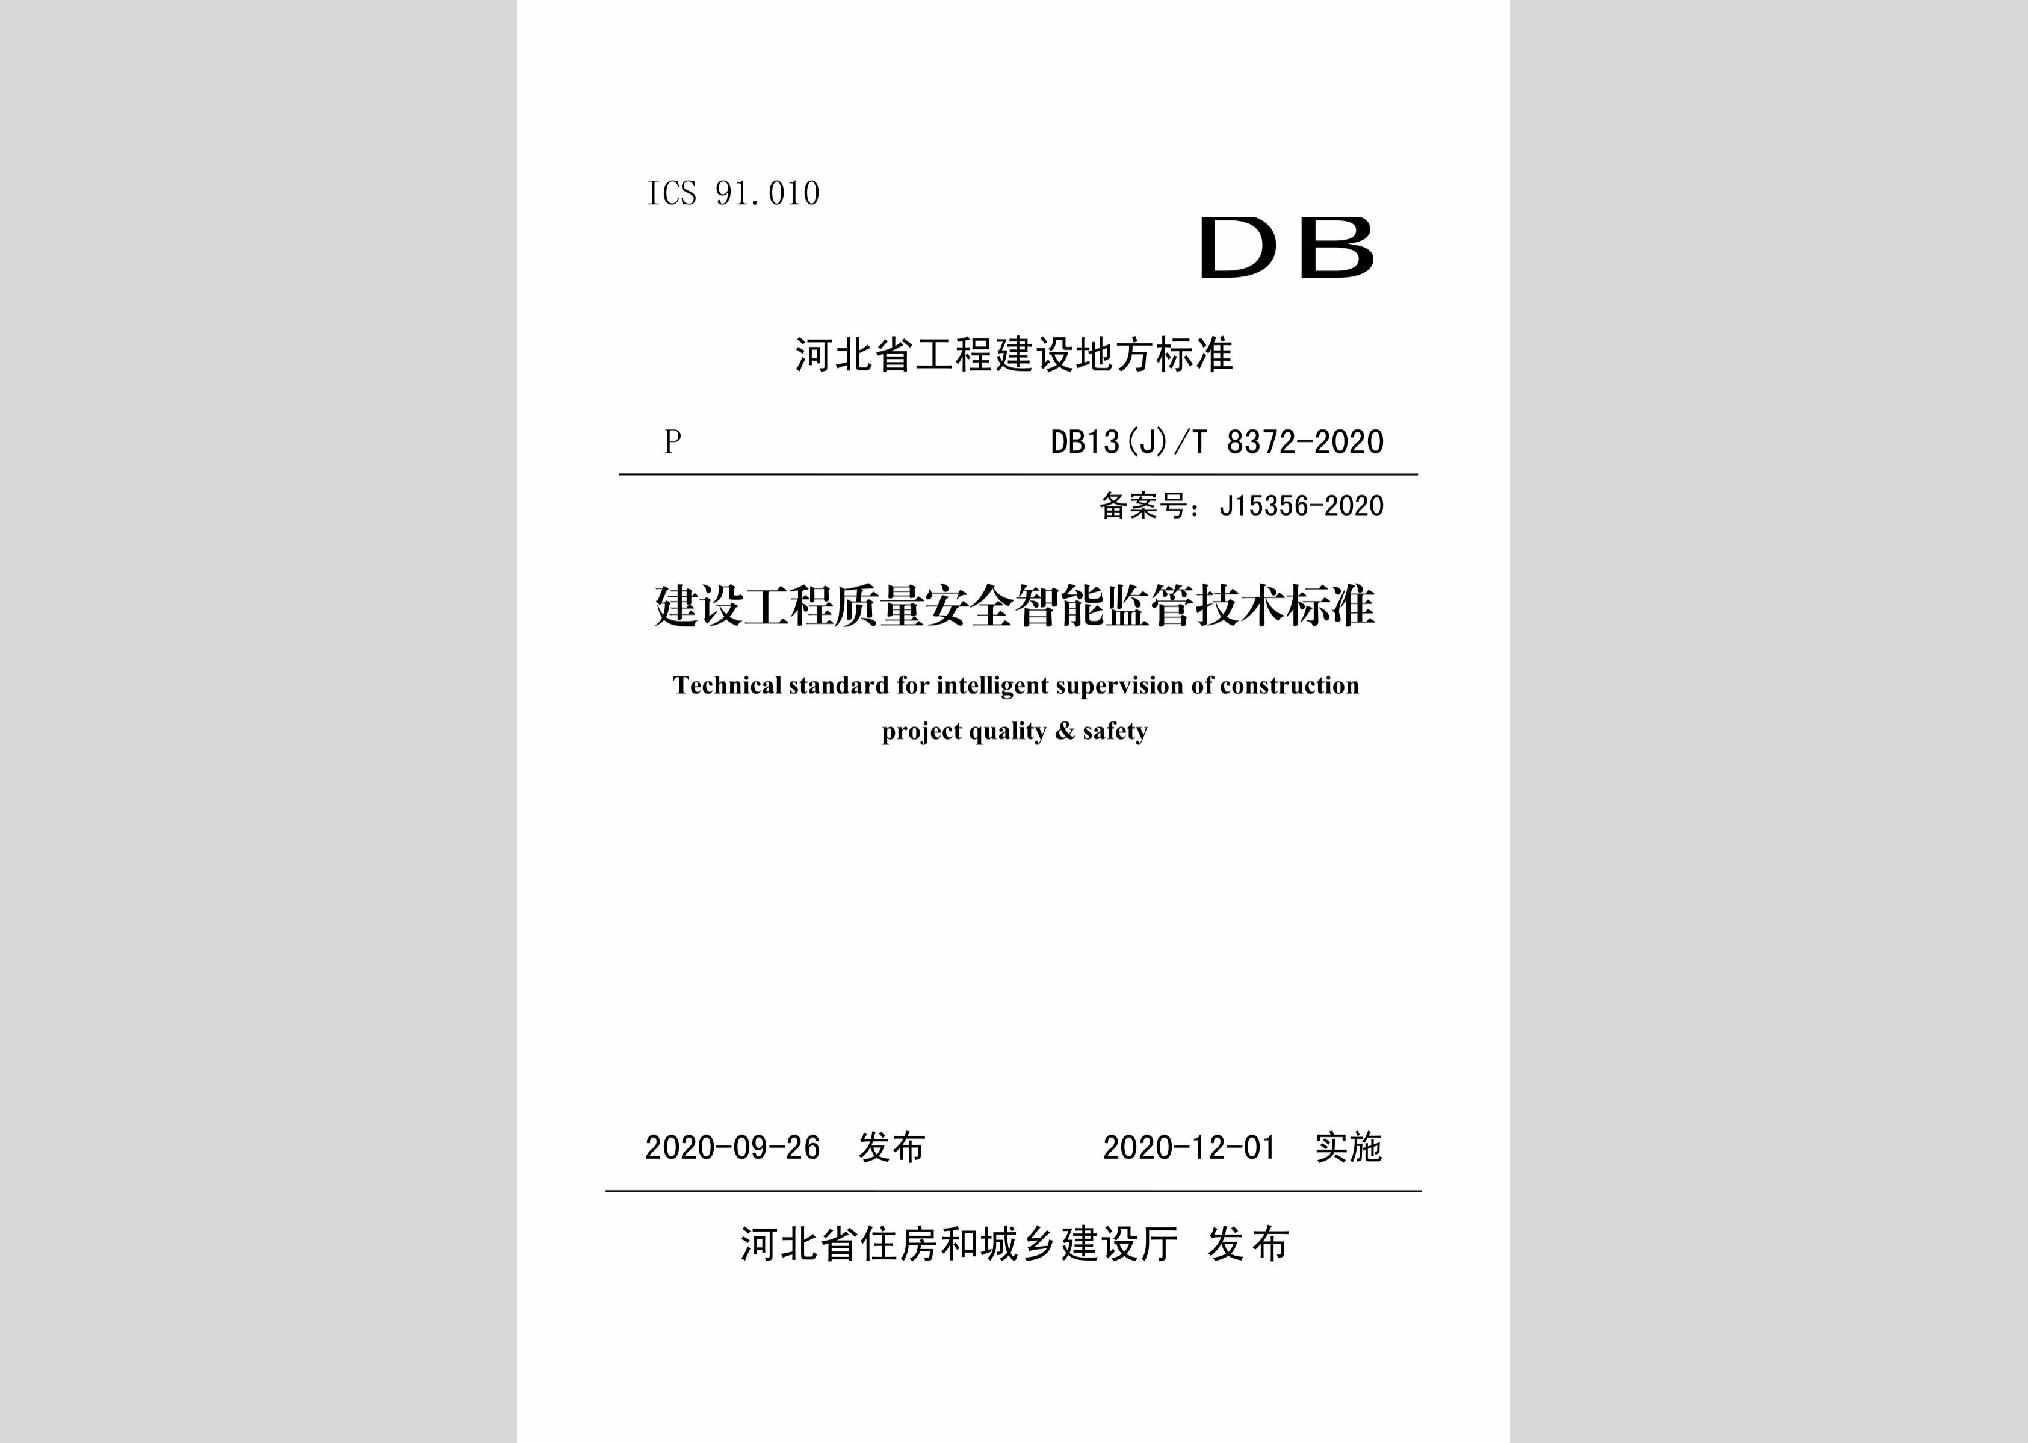 DB13(J)/T8372-2020：建设工程质量安全智能监管技术标准